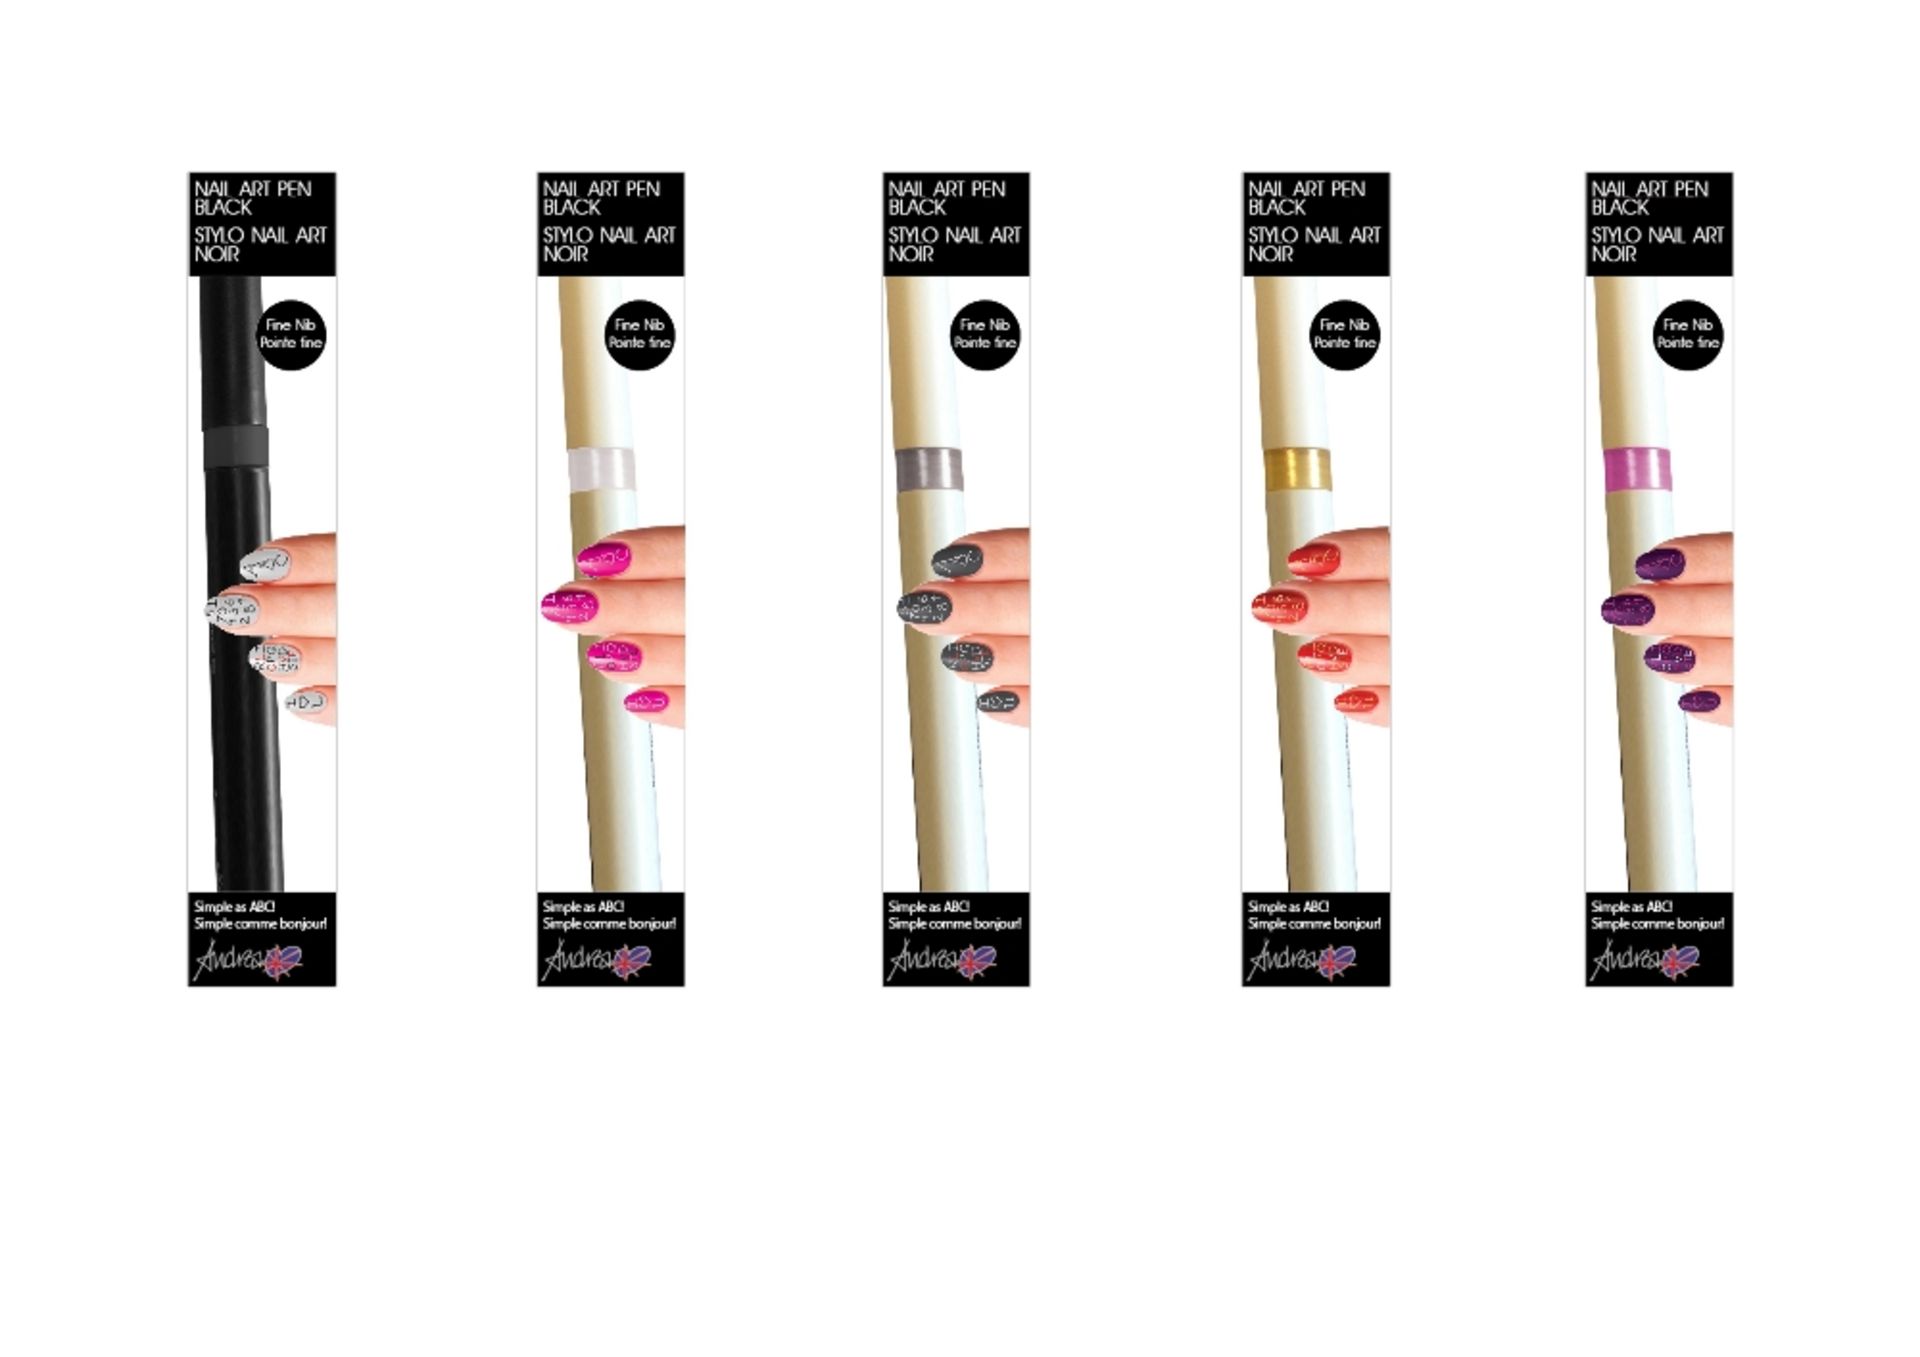 100 Andrea Fulerton Nail Art Pens – NO VAT   Brand New – Mixed Shades- Individually Boxed   UK